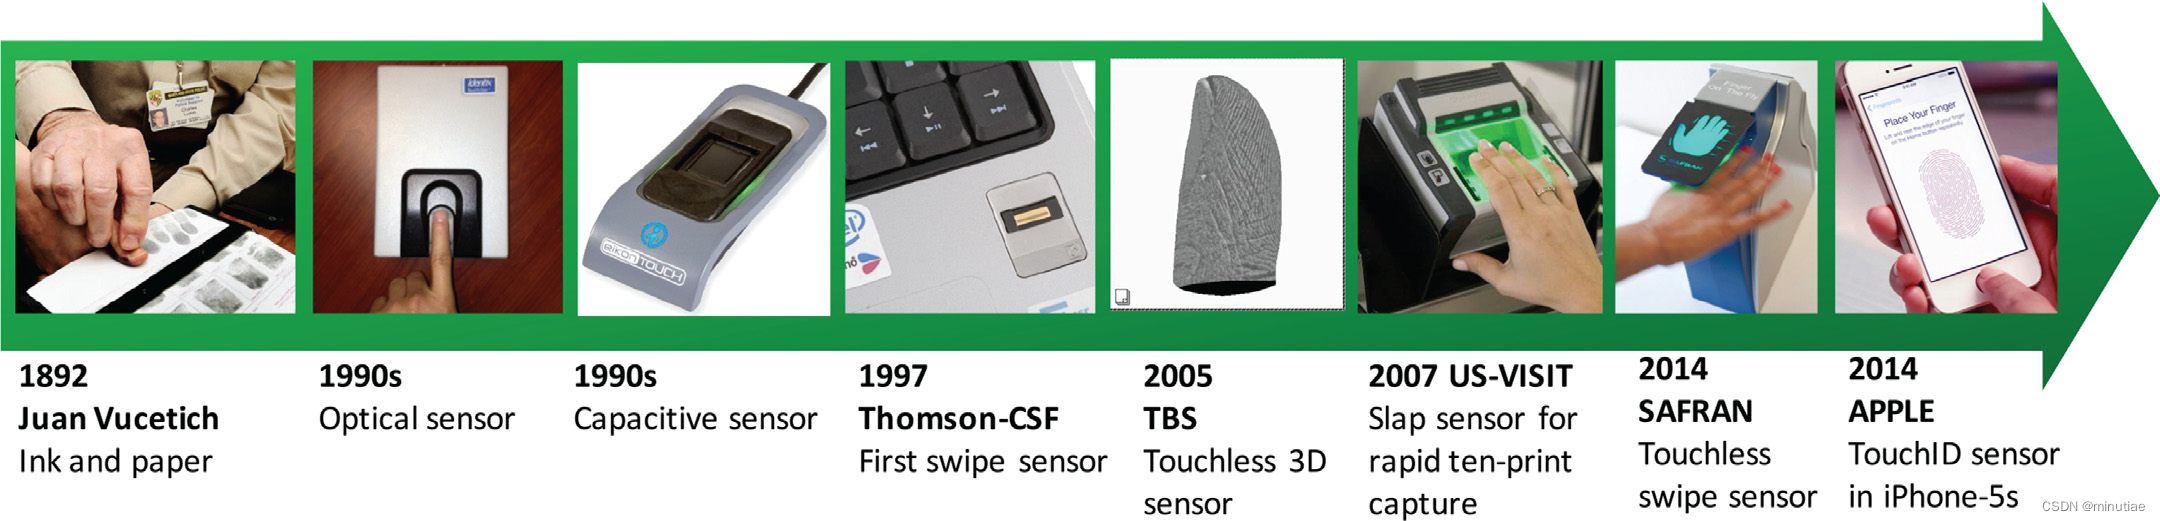 Development of Fingerprint Sensing Technology